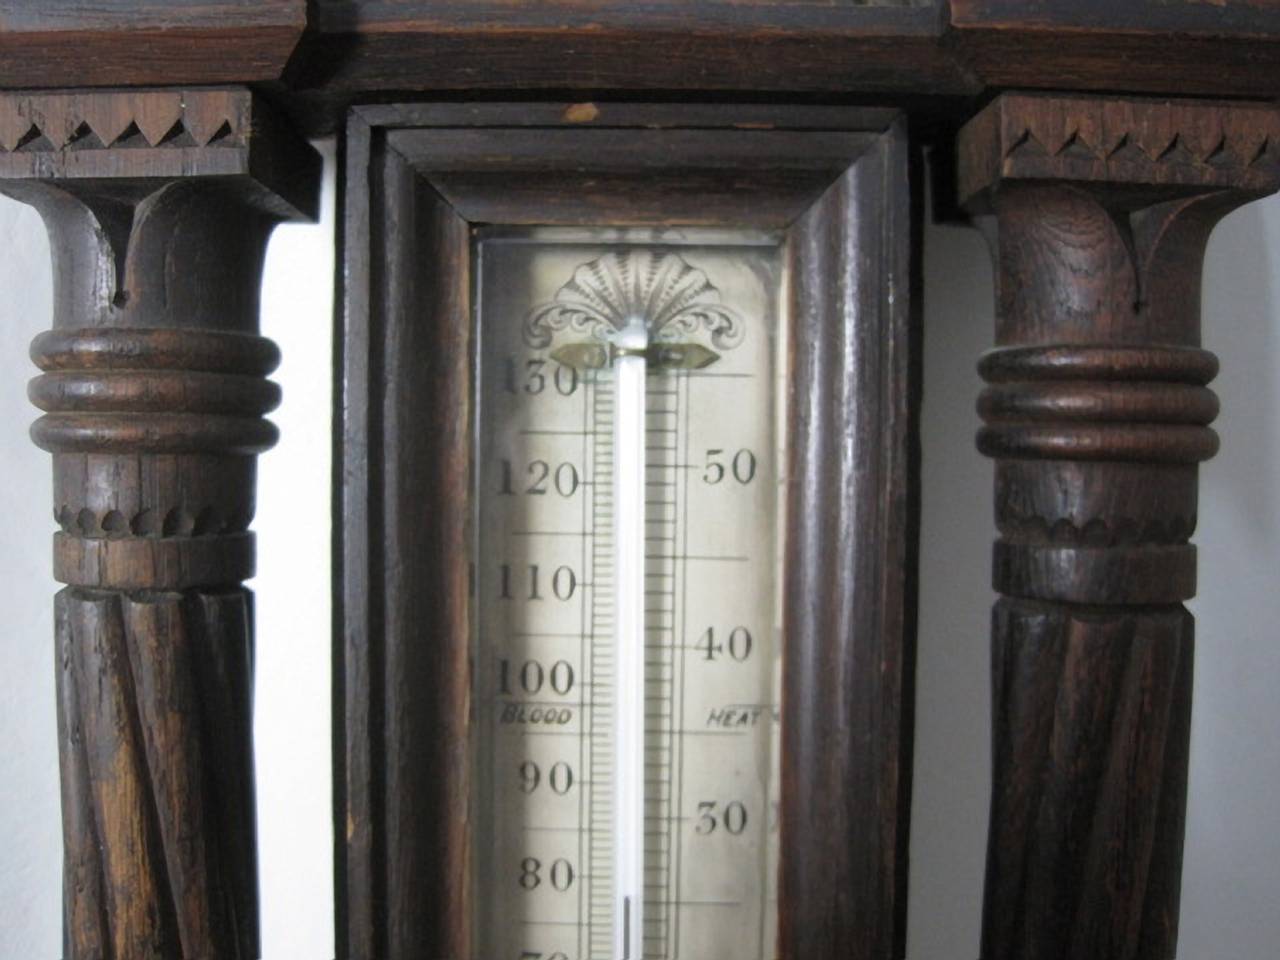 negretti and zambra barometer for sale